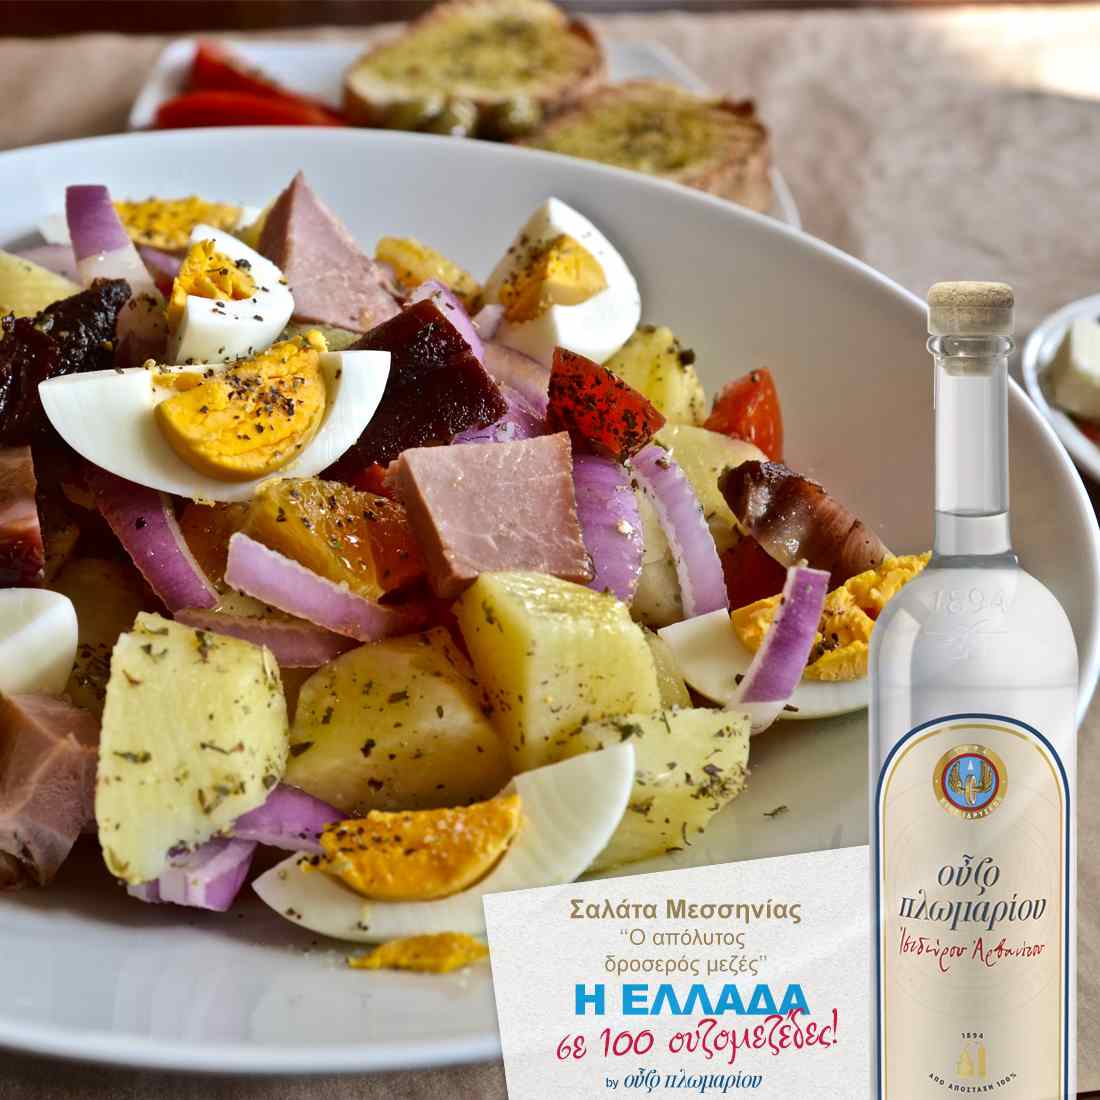 Σαλάτα Μεσσηνίας - Ουζομεζέδες - Greek Gastronomy Guide